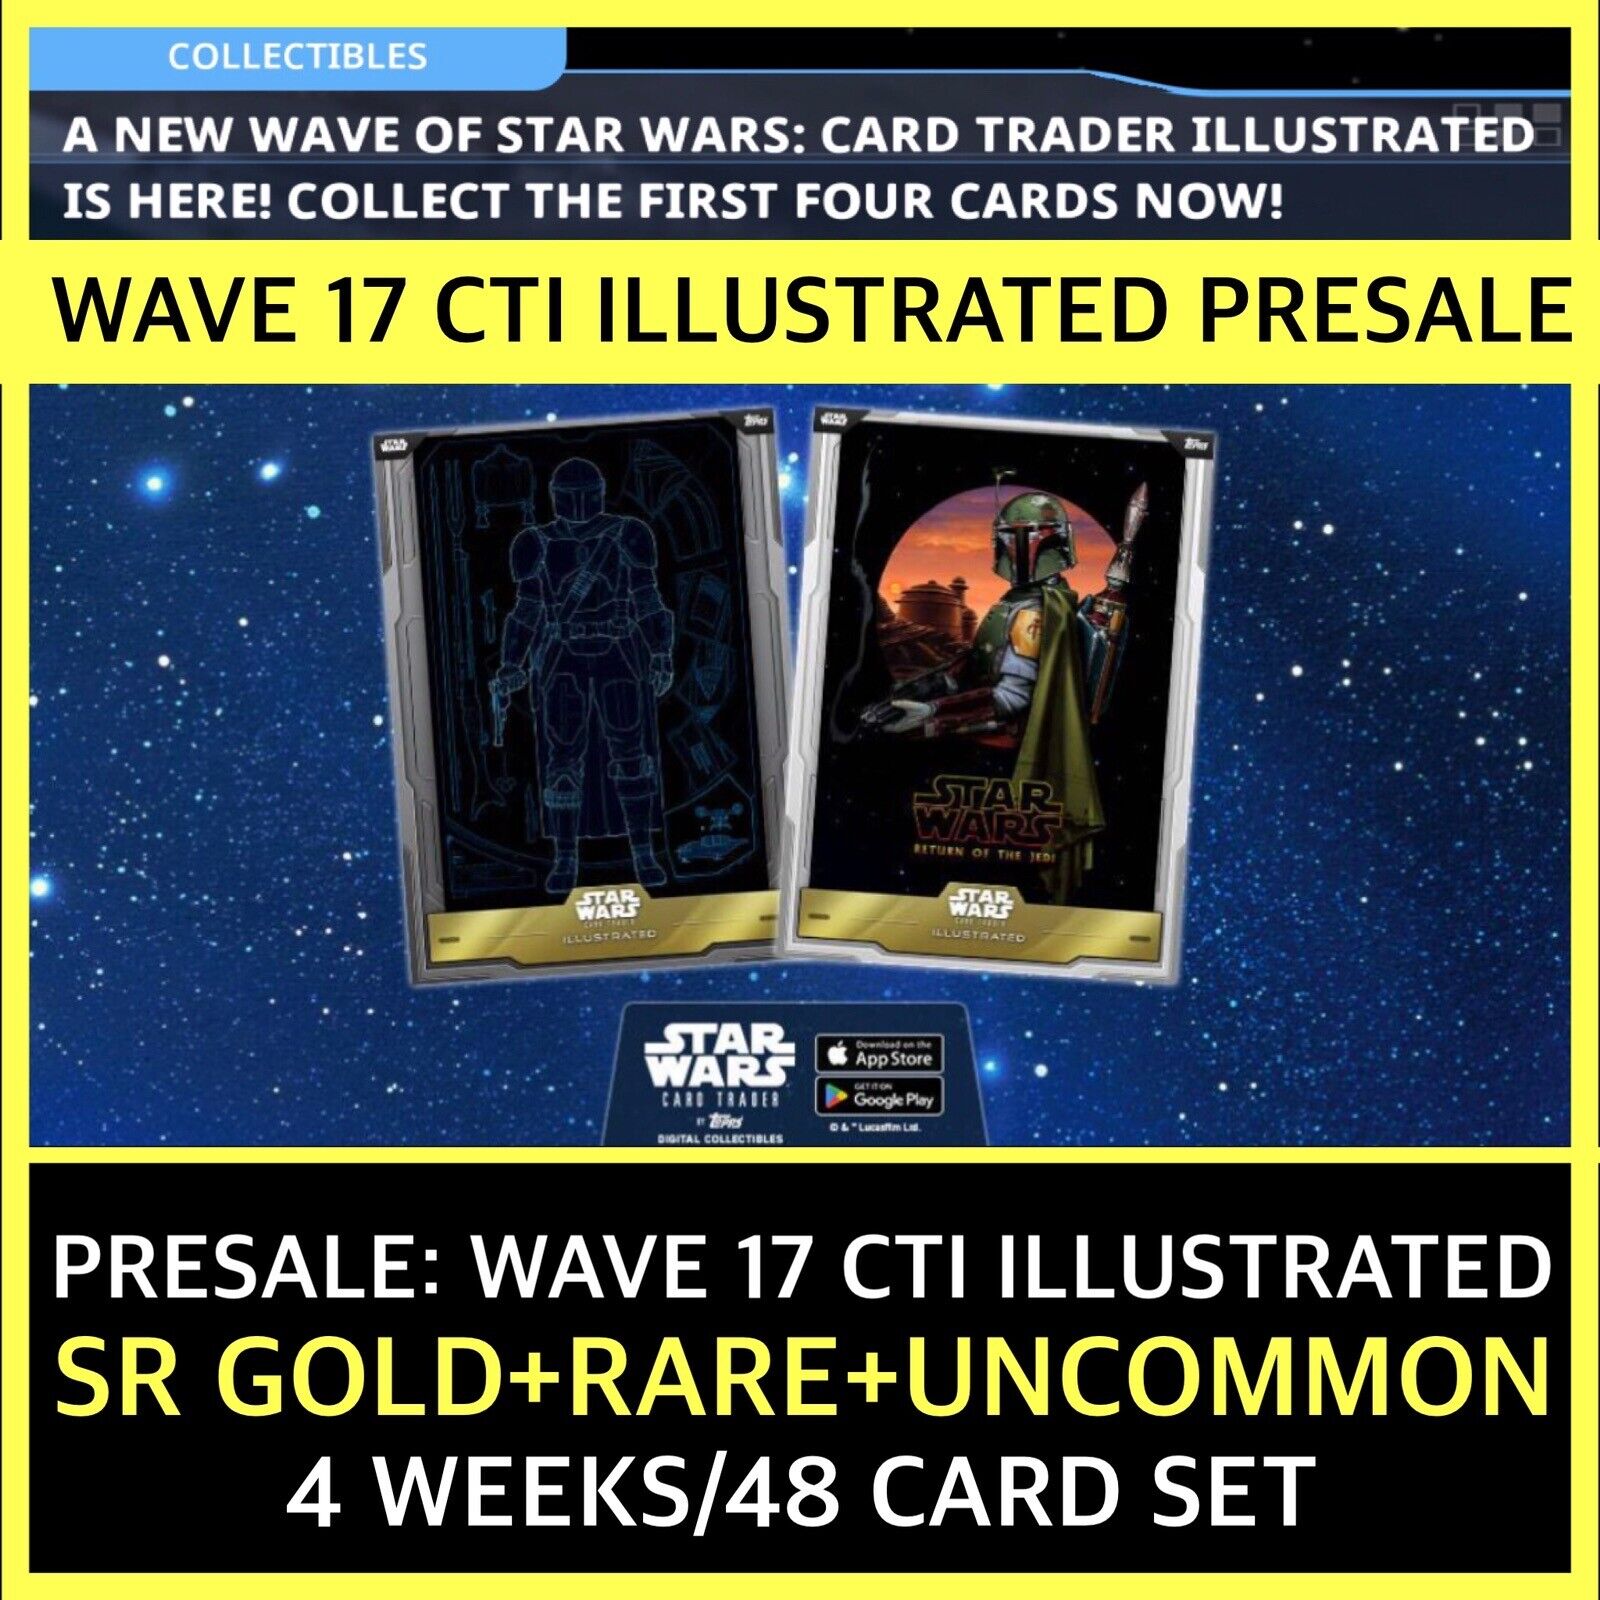 PRESALE WAVE 17 CTI ILLUSTRATED-SR+R+UC 48 CARD SET-TOPPS STAR WARS CARD TRADER